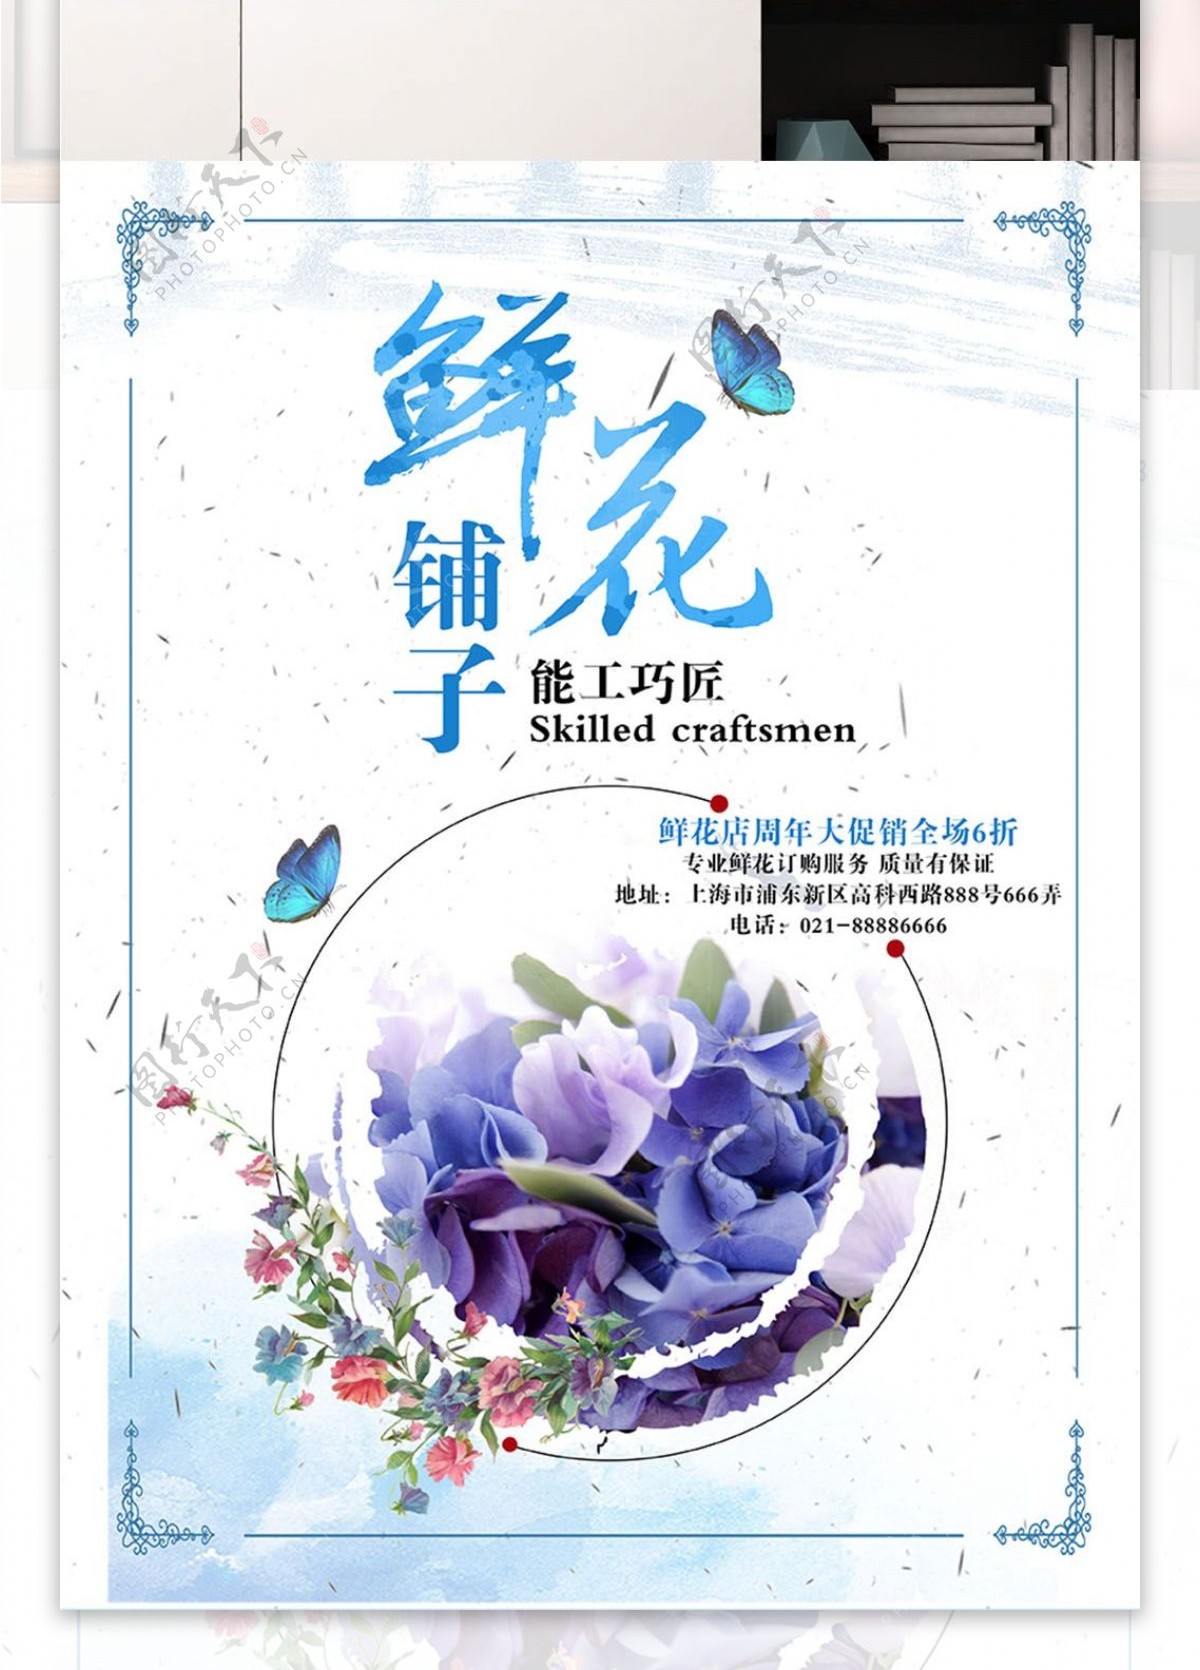 小清新花店蝴蝶蓝色底纹边框促销海报